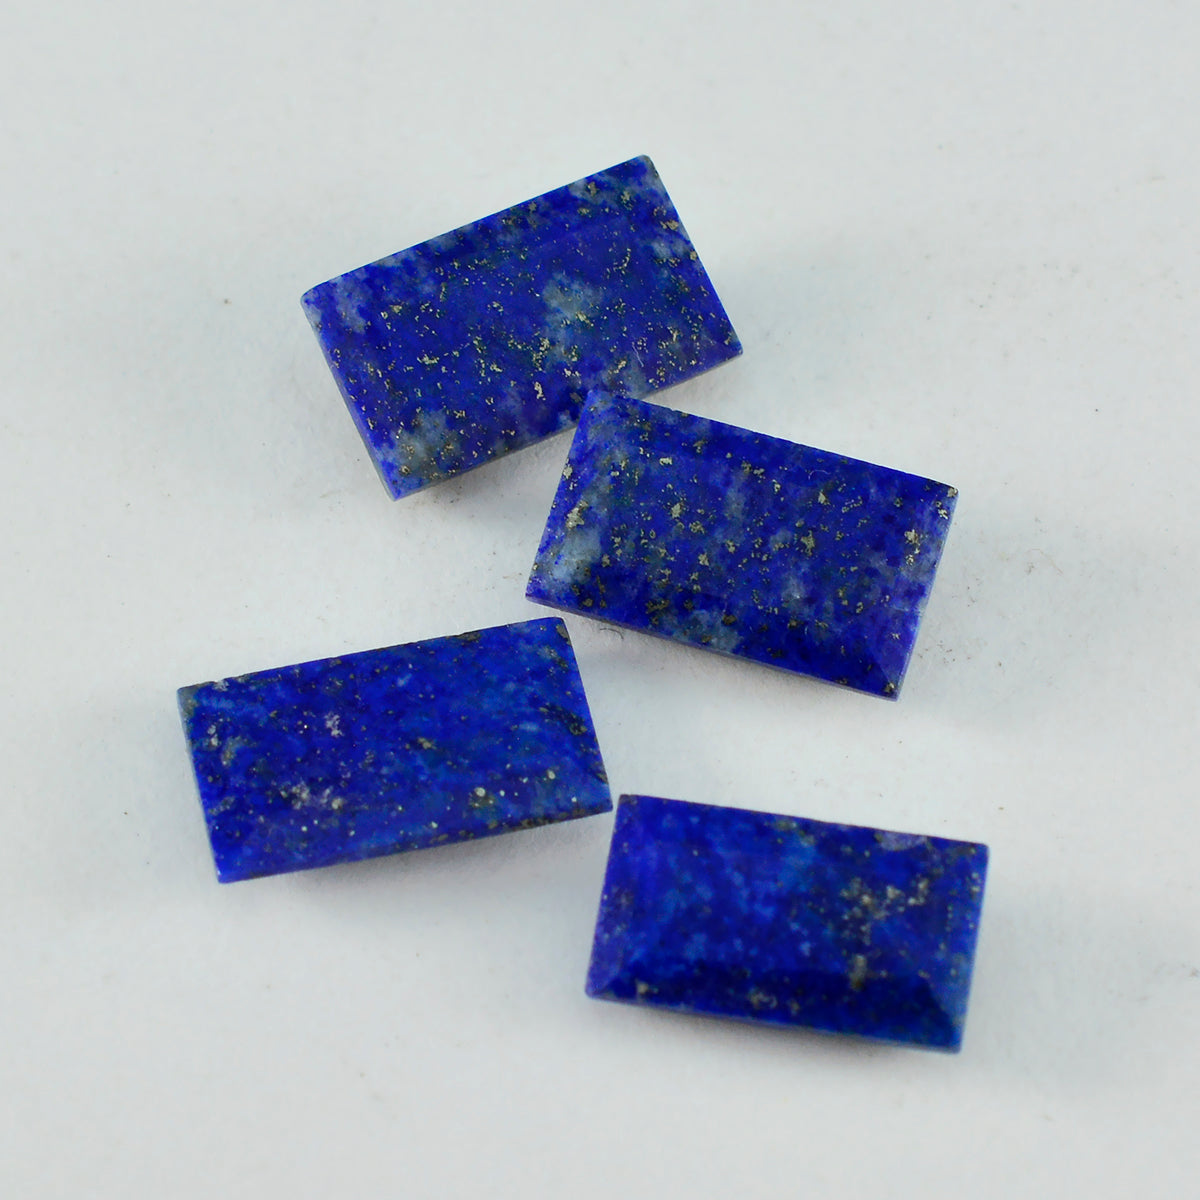 riyogems 1 st naturlig blå lapis lazuli fasetterad 6x12 mm baguette form häpnadsväckande kvalitetsädelstenar